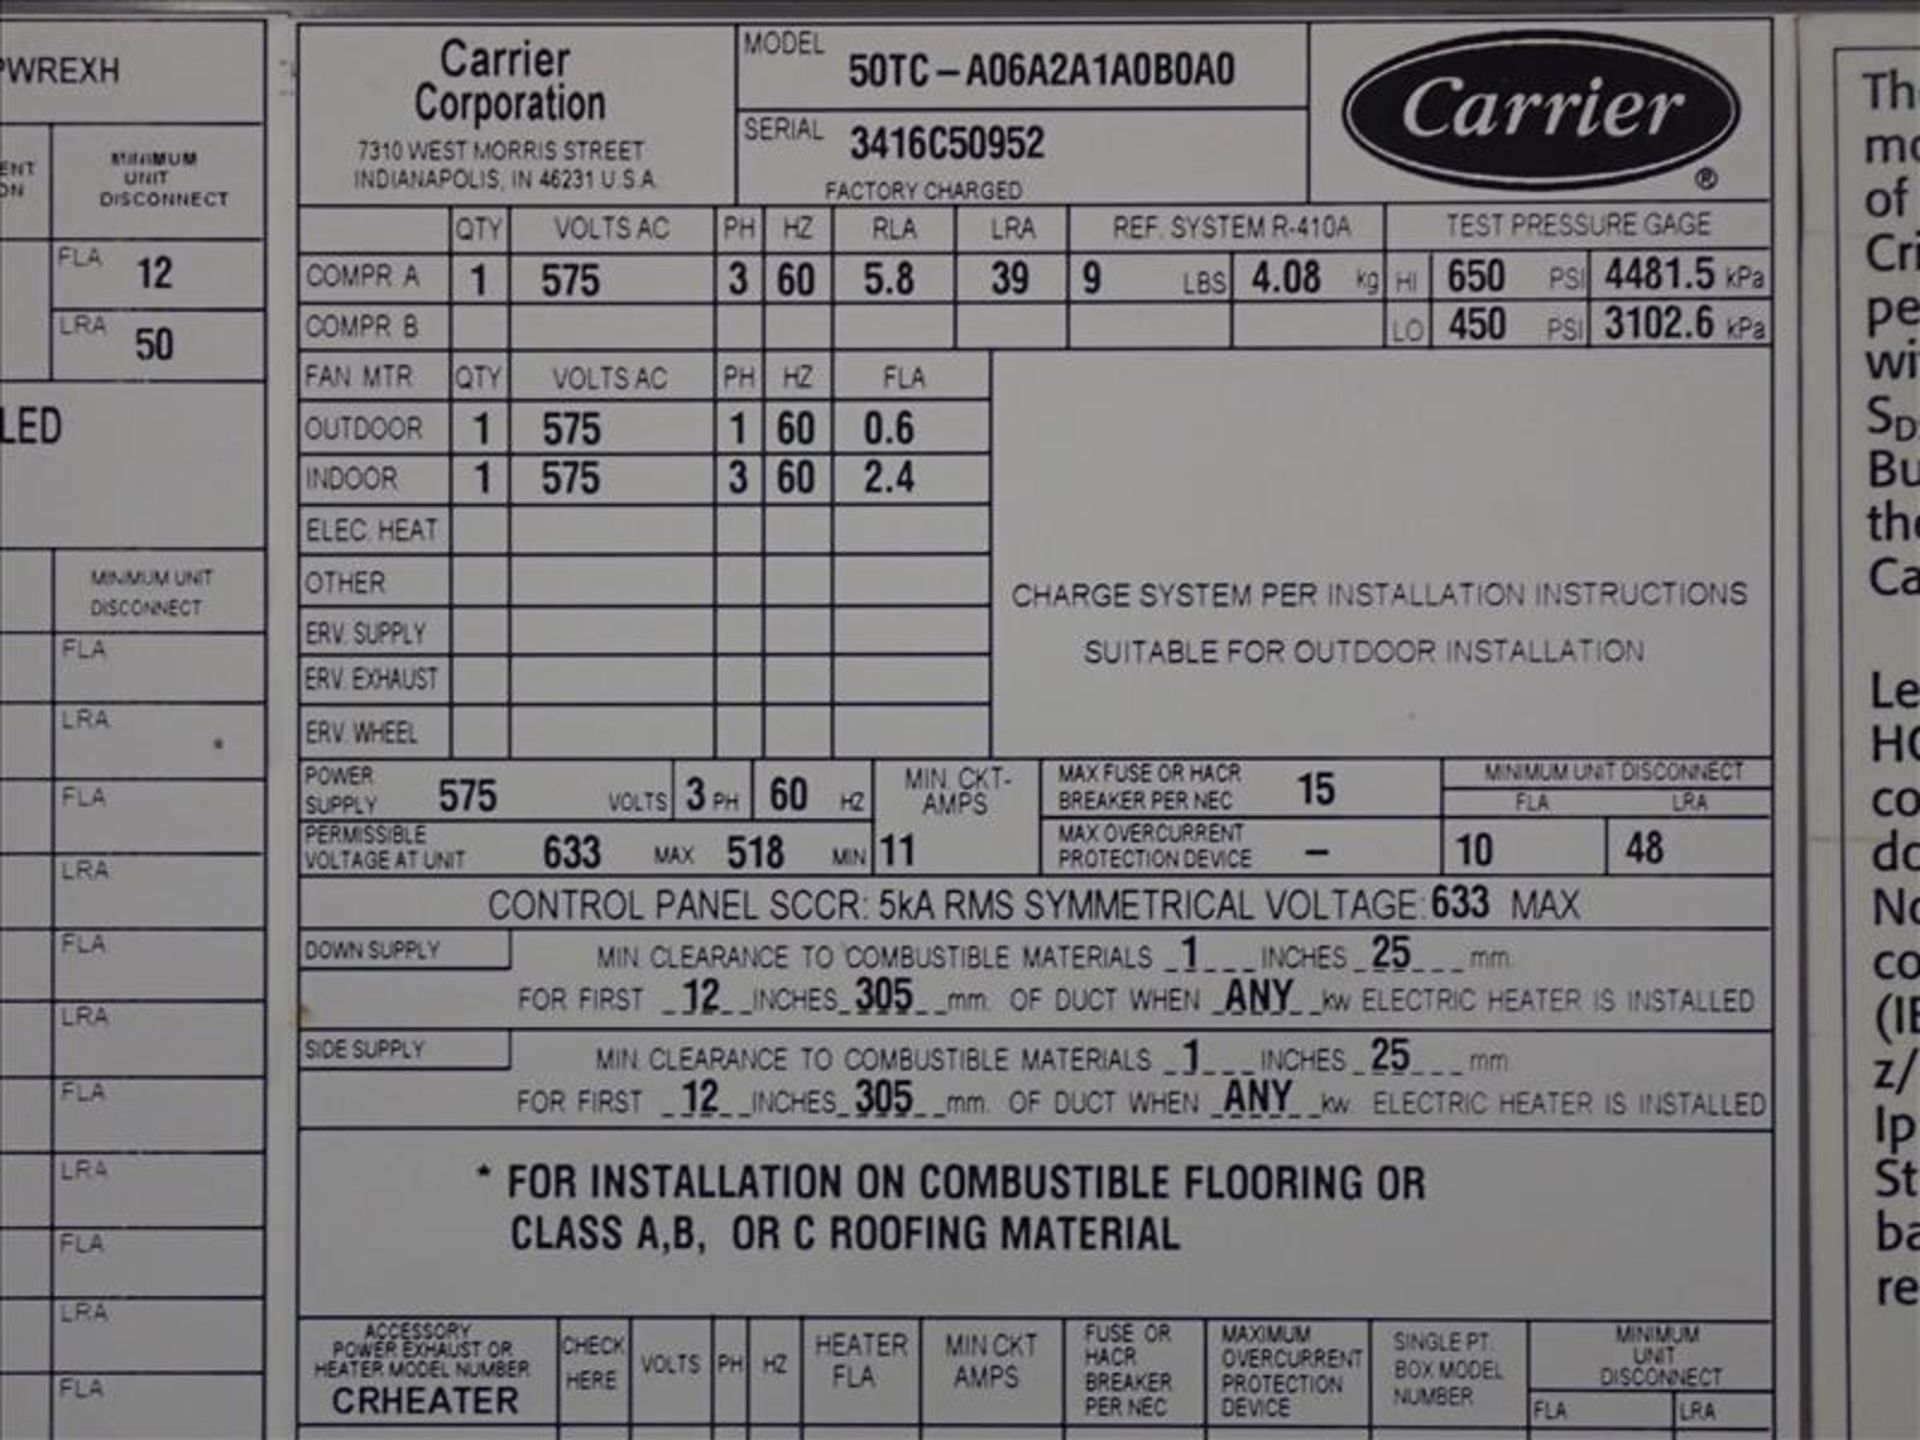 Carrier HVAC unit, mod. 50TC-A06A2A1A0B0A0 - Image 2 of 2